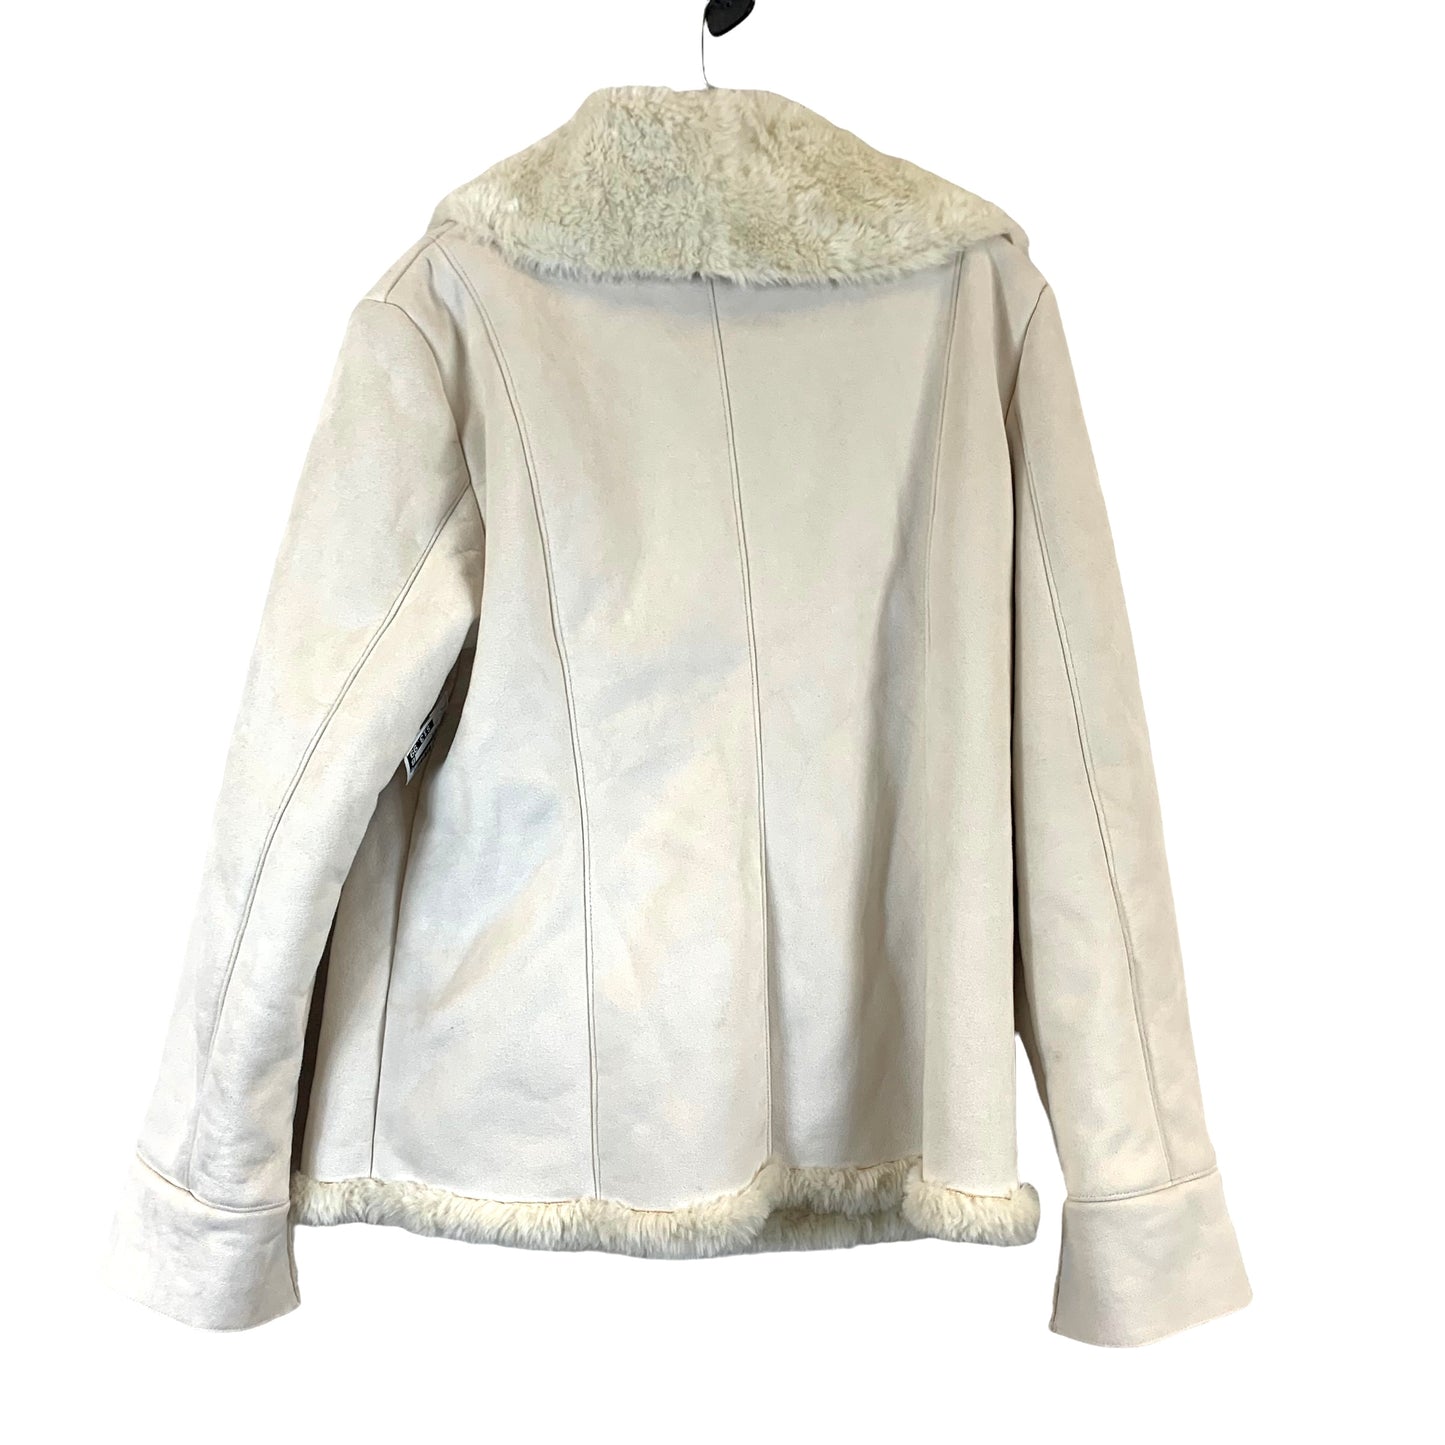 Jacket Fleece By St Johns Bay Size: L